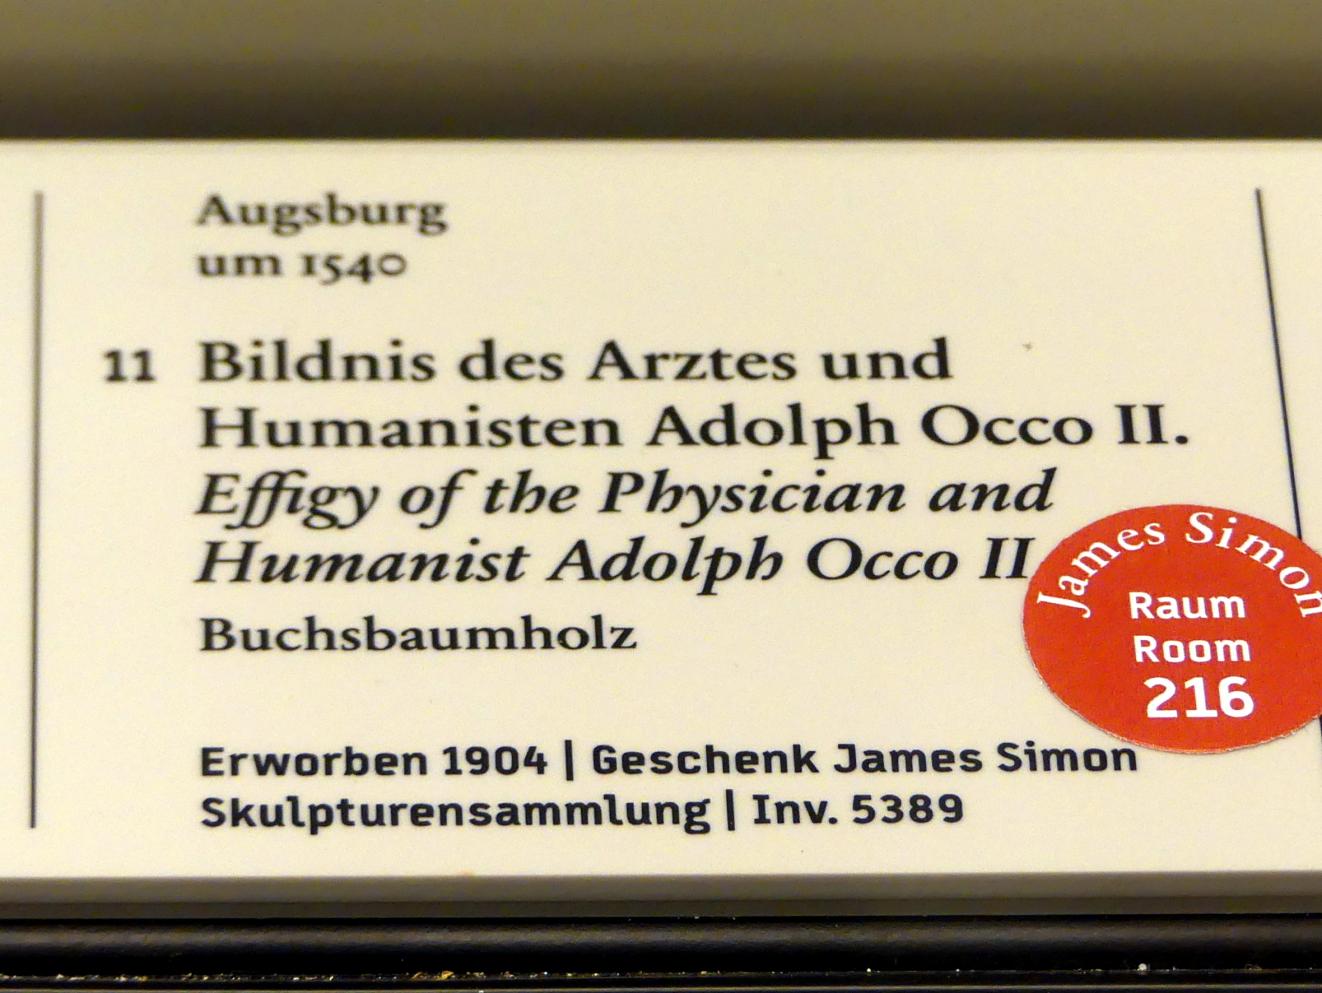 Bildnis des Arztes und Humanisten Adolph Occo II., Berlin, Bode-Museum, Saal 221, um 1540, Bild 2/2